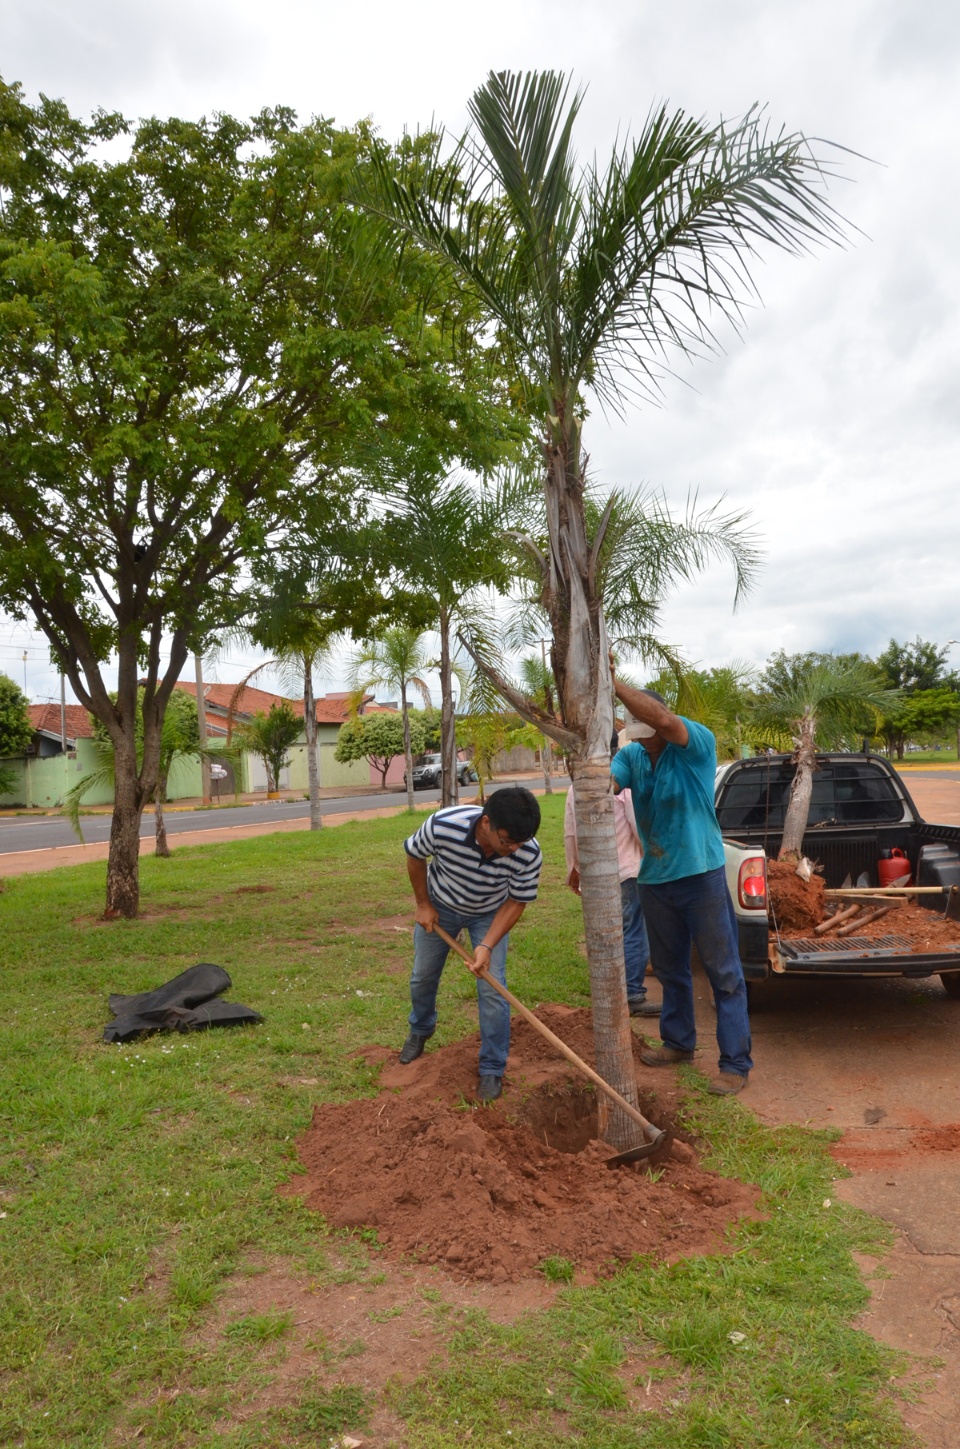 Prefeitura replanta palmeiras retiradas da Clodoaldo Garcia